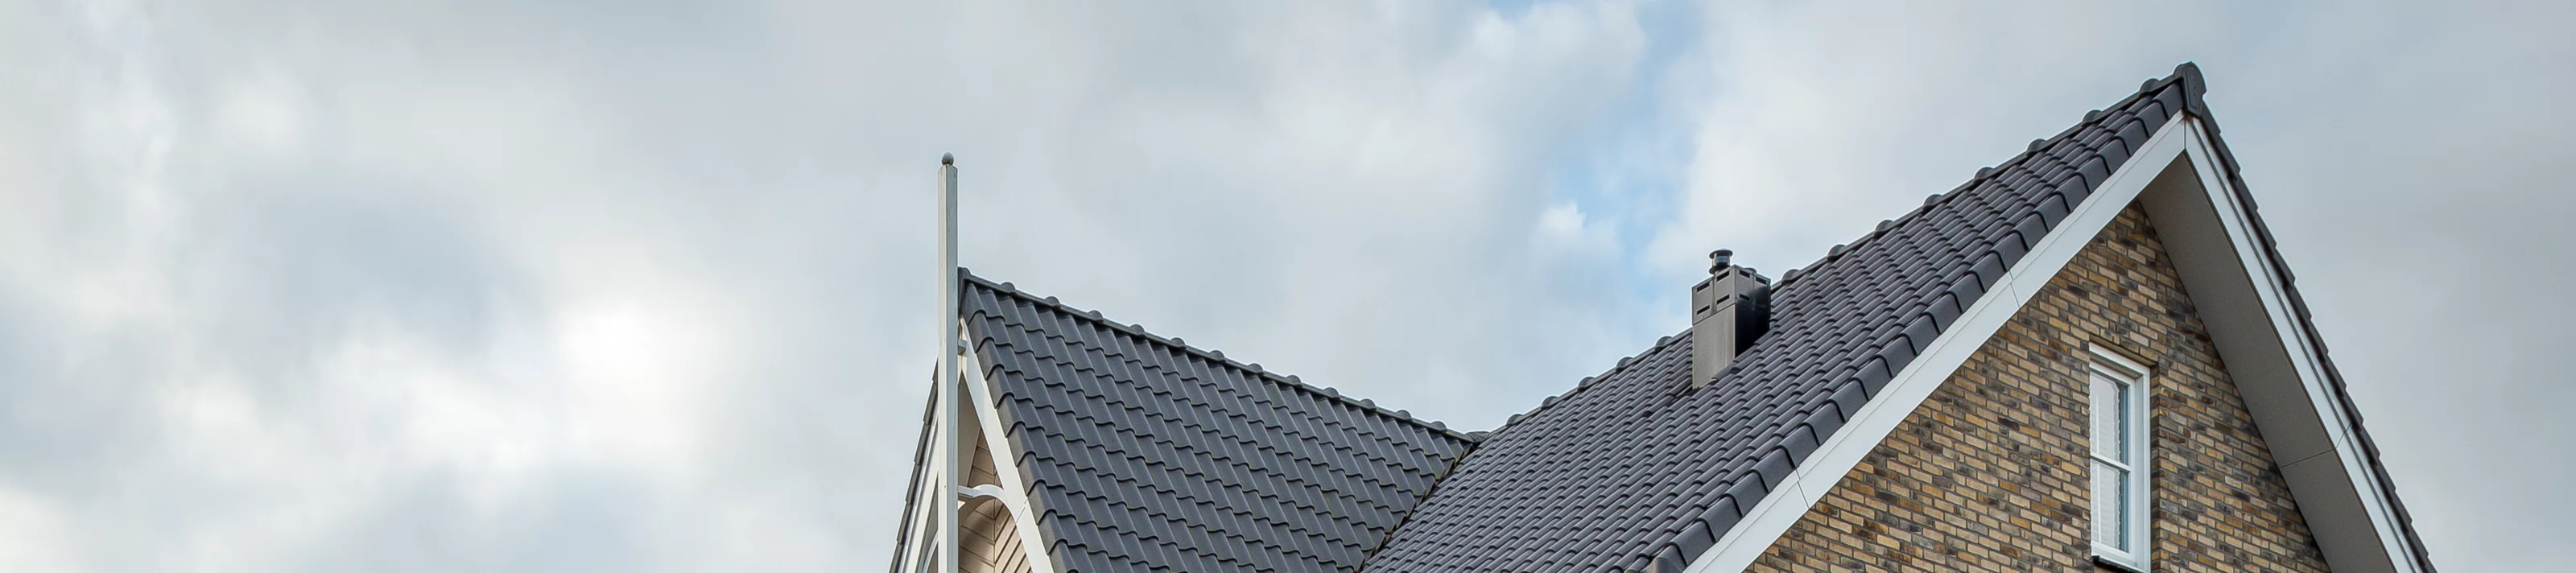 Dura Vermeer gebrukt Supafil Cavity XL bij project Alphen aan den Rijn